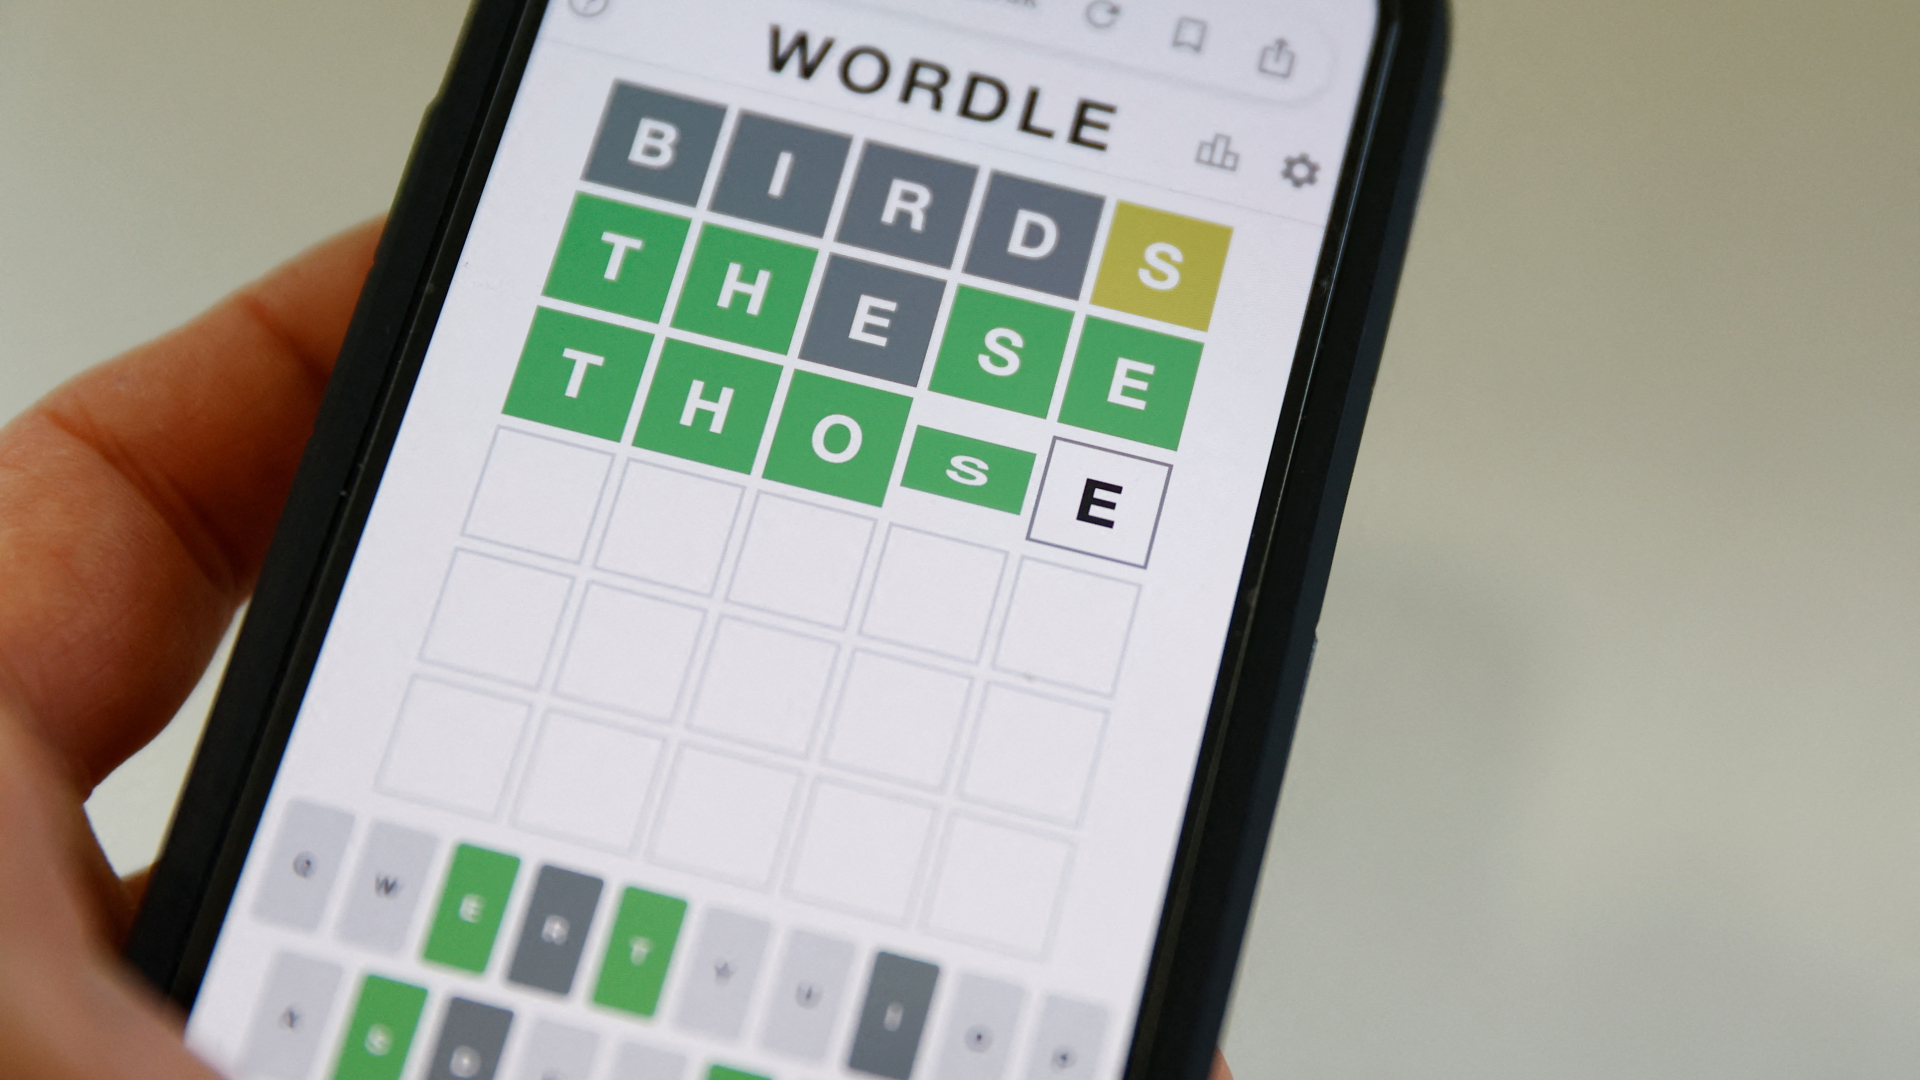 Das populäre Rätselspiel Wordle auf einer Smartphone. | REUTERS